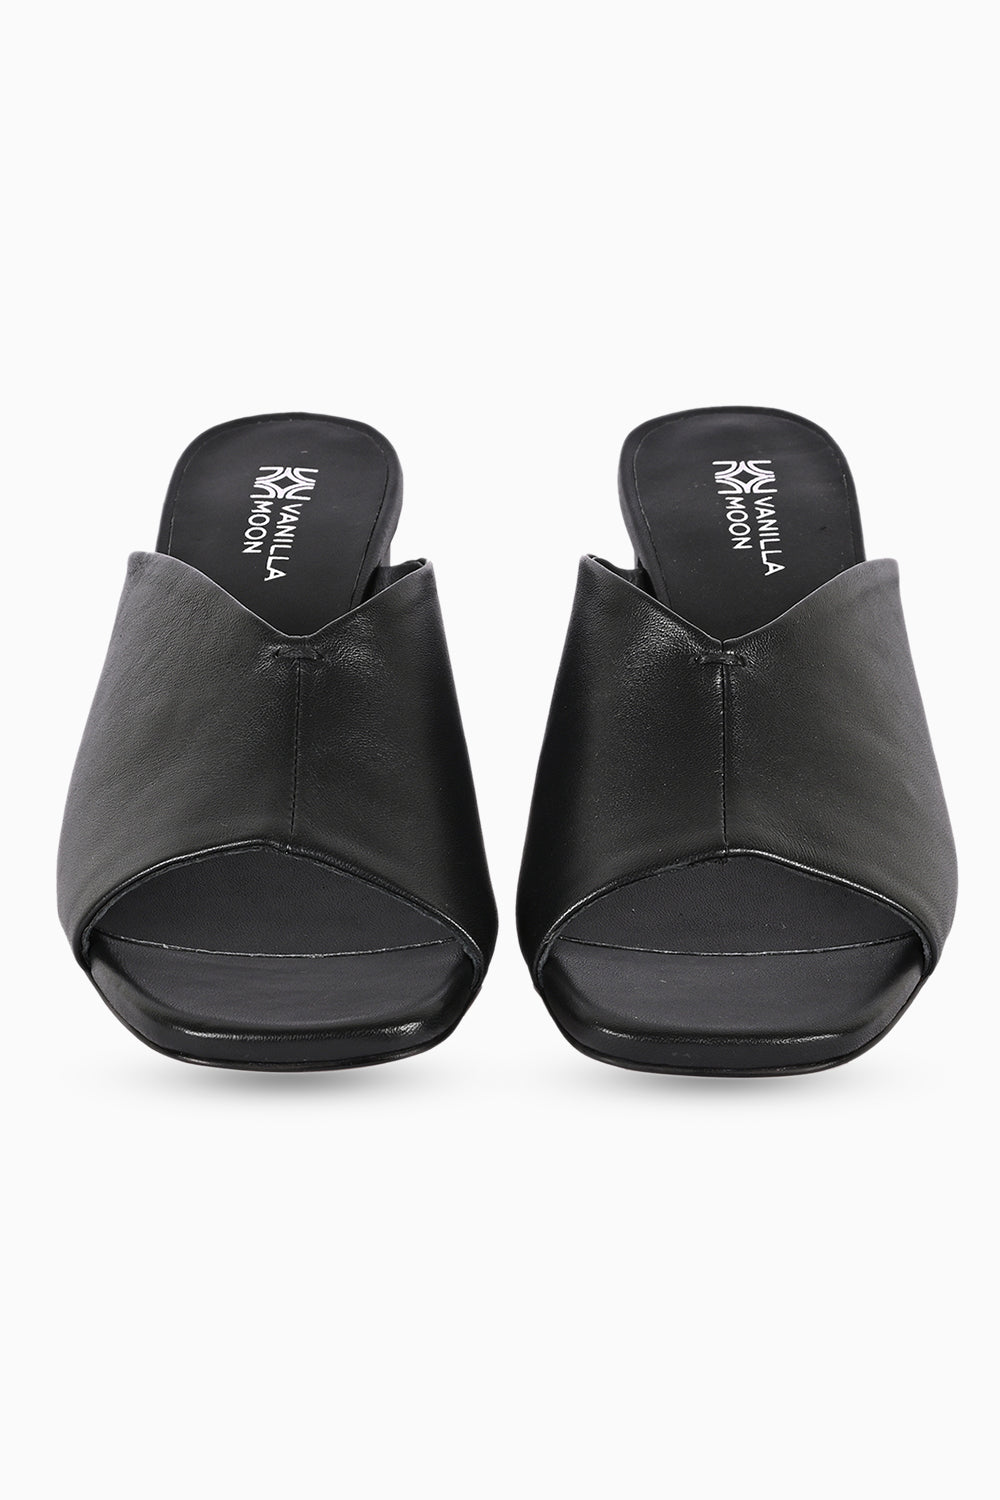 Dante Black Heel Sandals